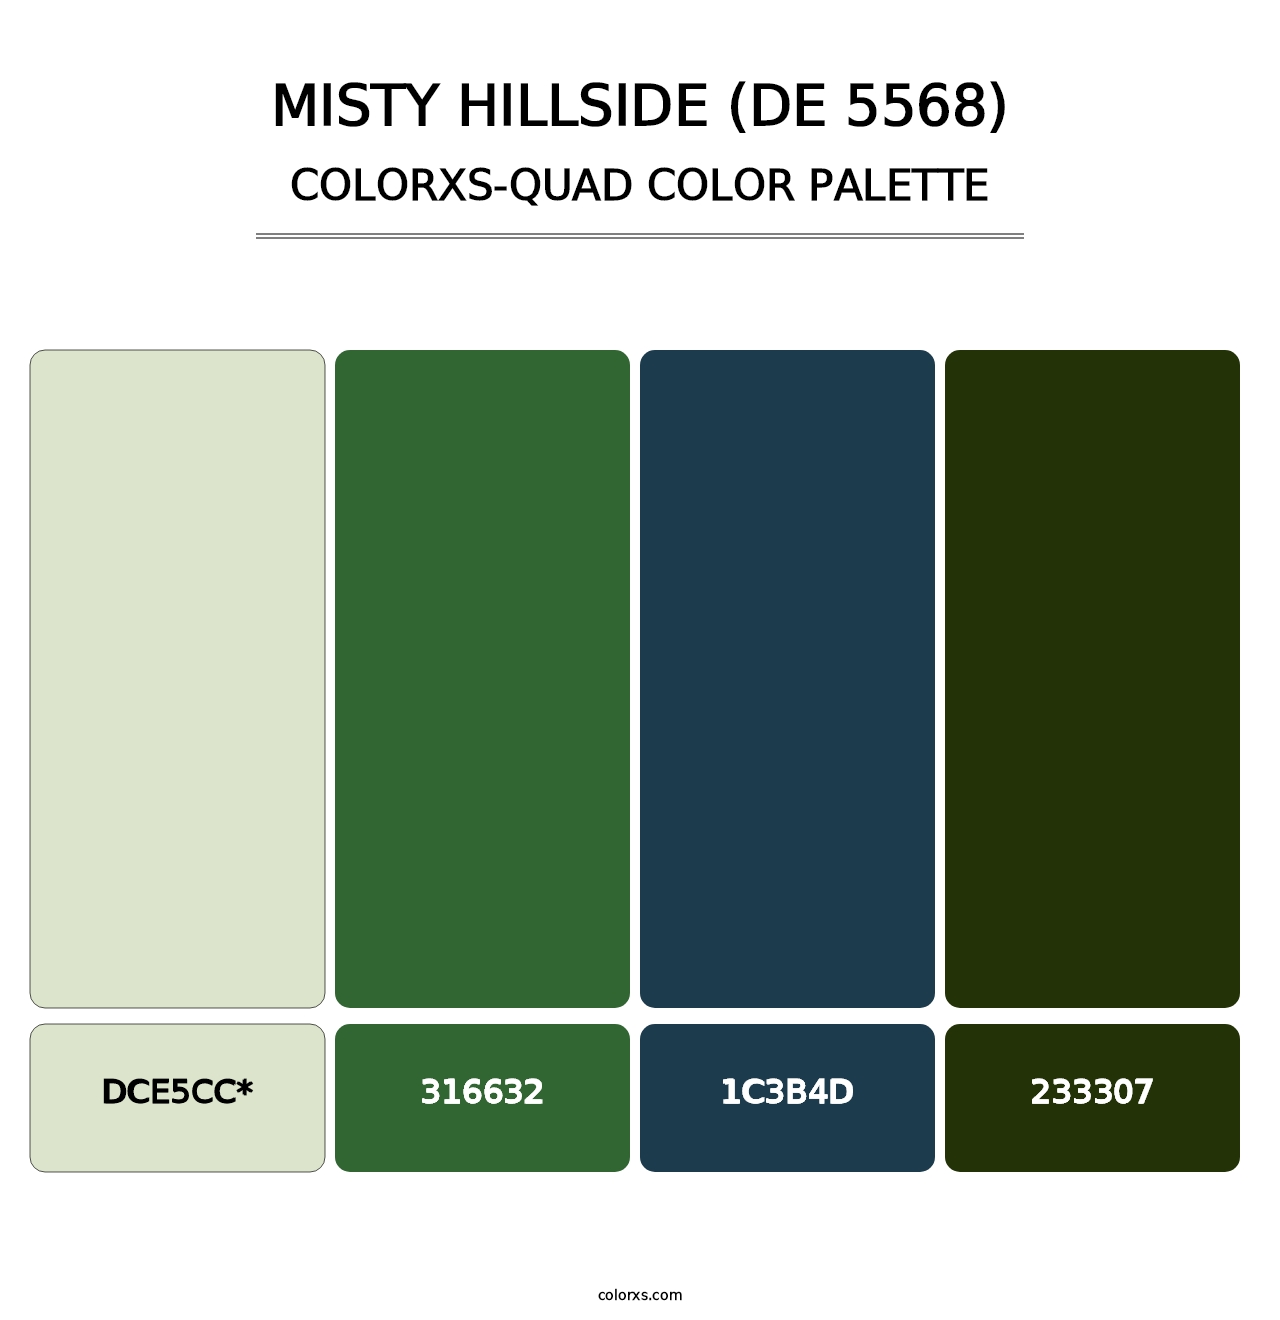 Misty Hillside (DE 5568) - Colorxs Quad Palette